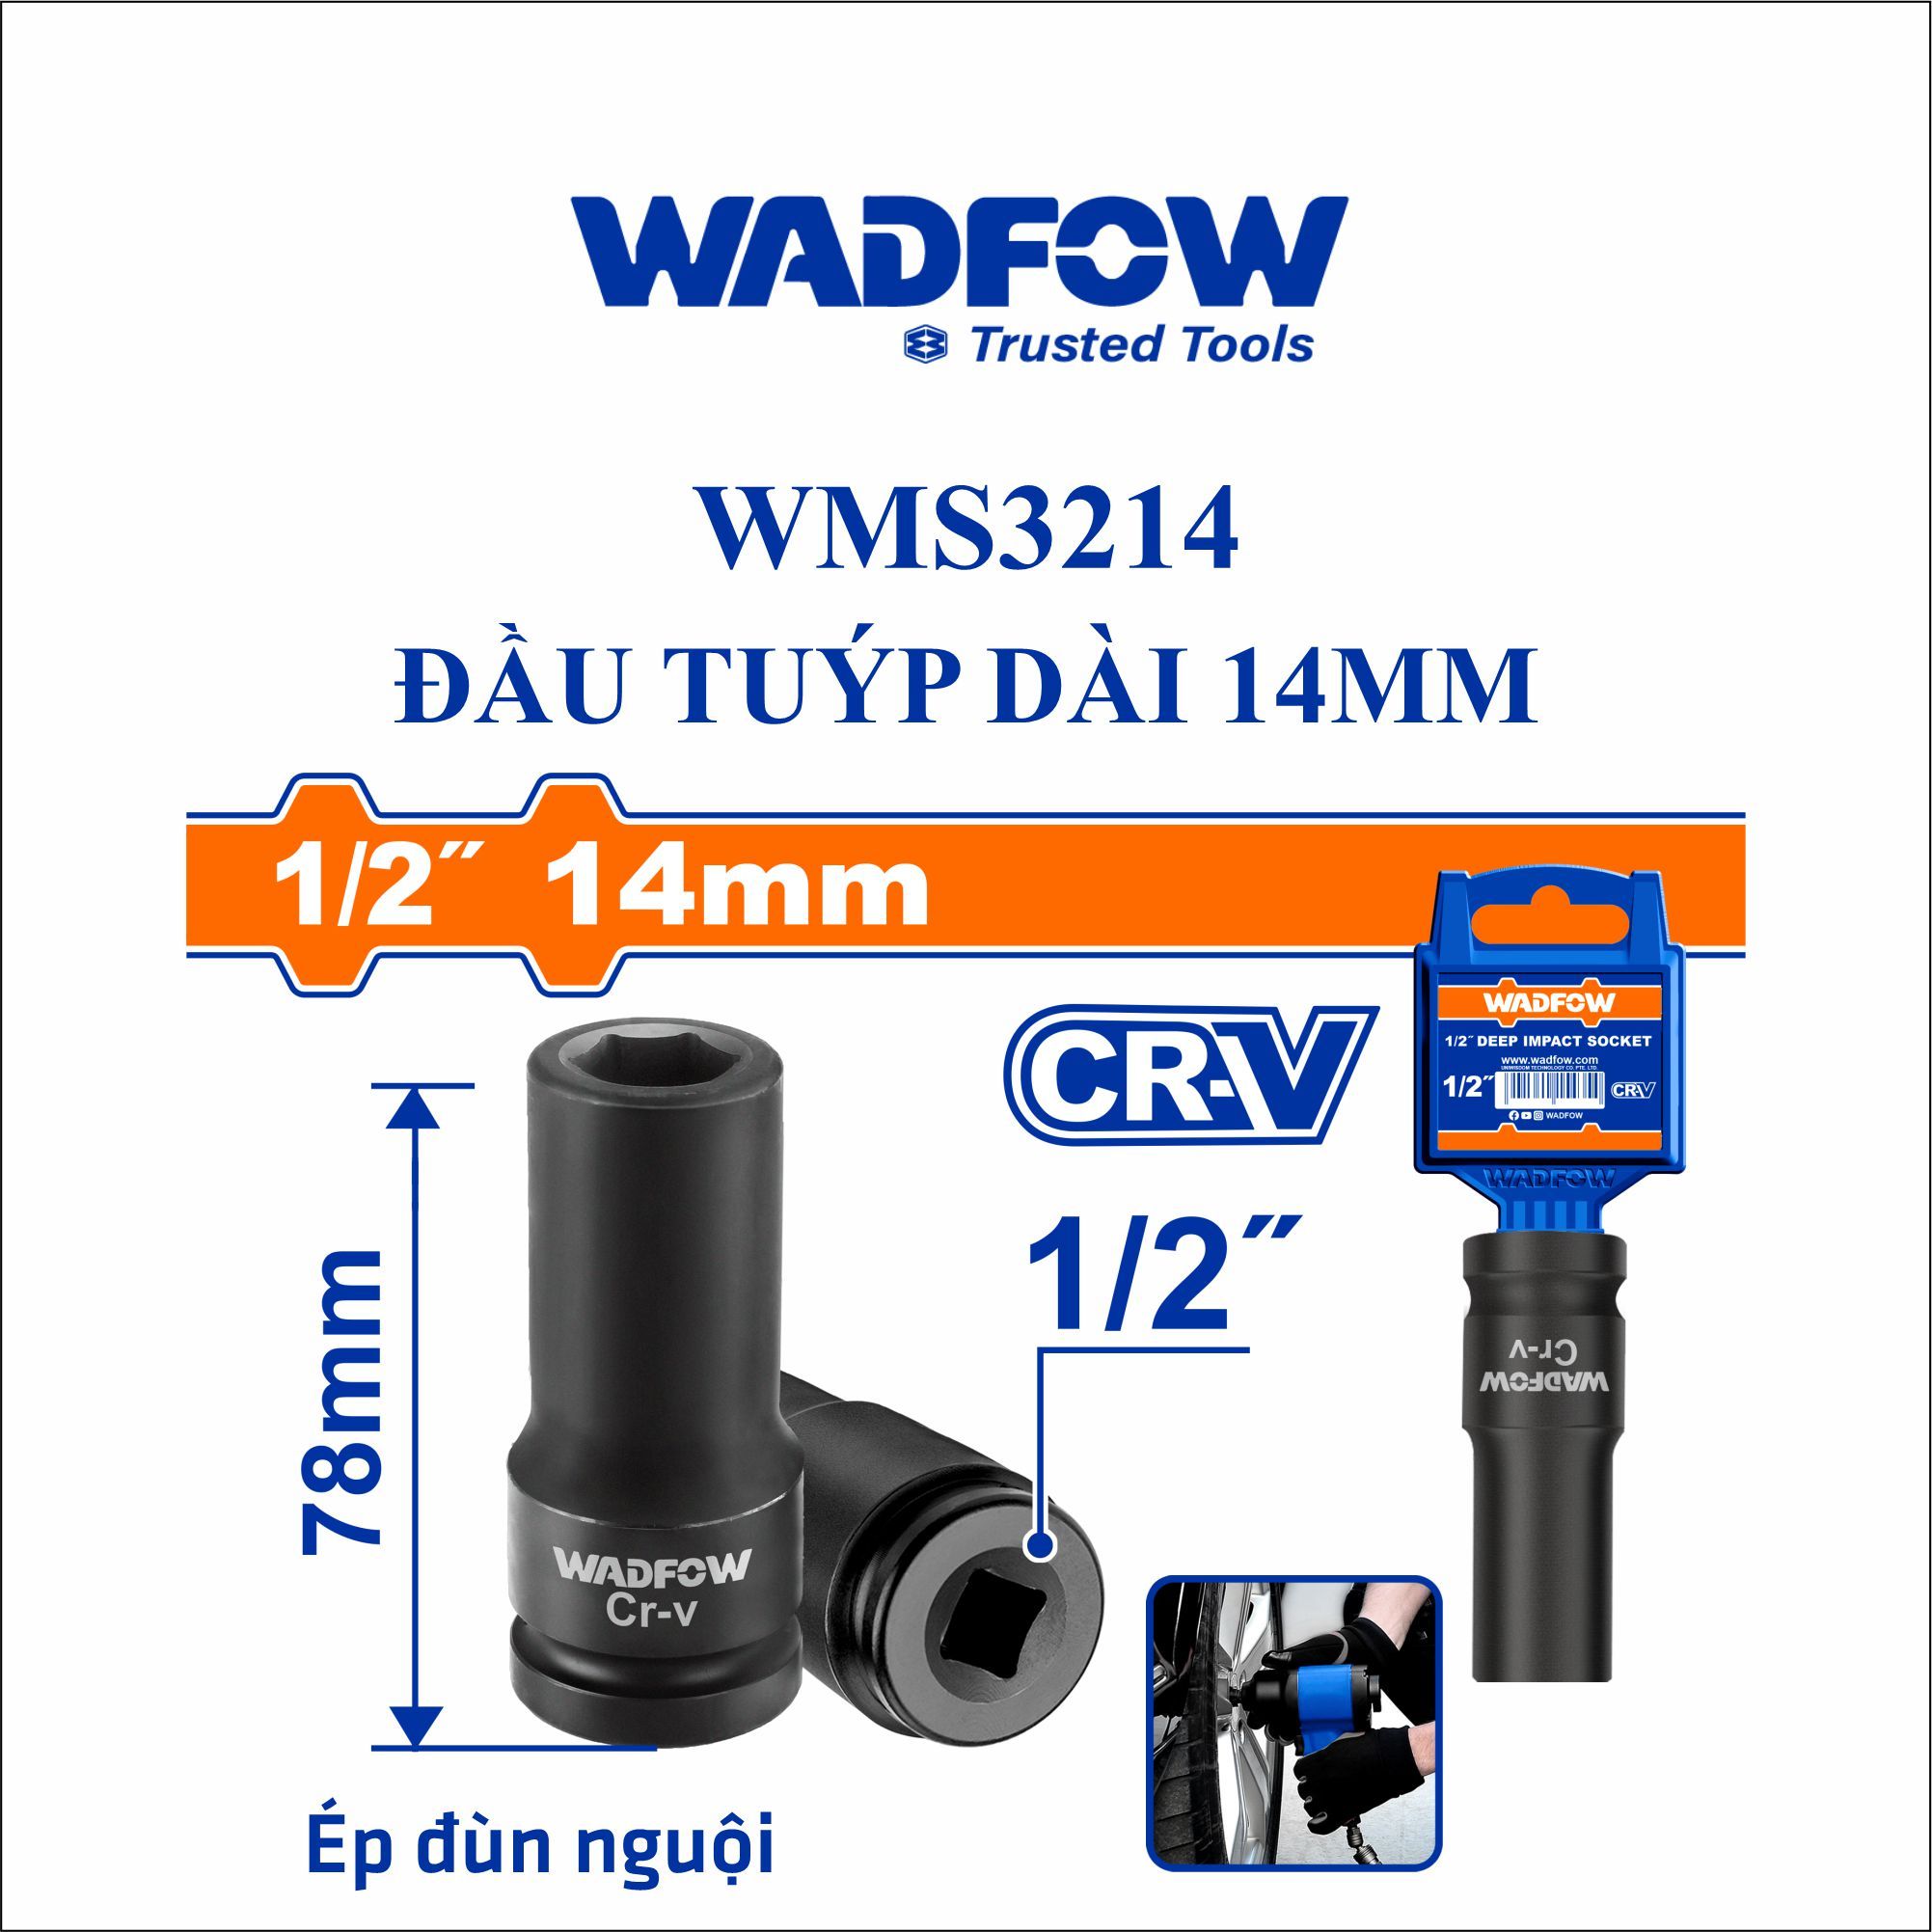  Đầu tuýp dài 14mm WADFOW WMS3214 